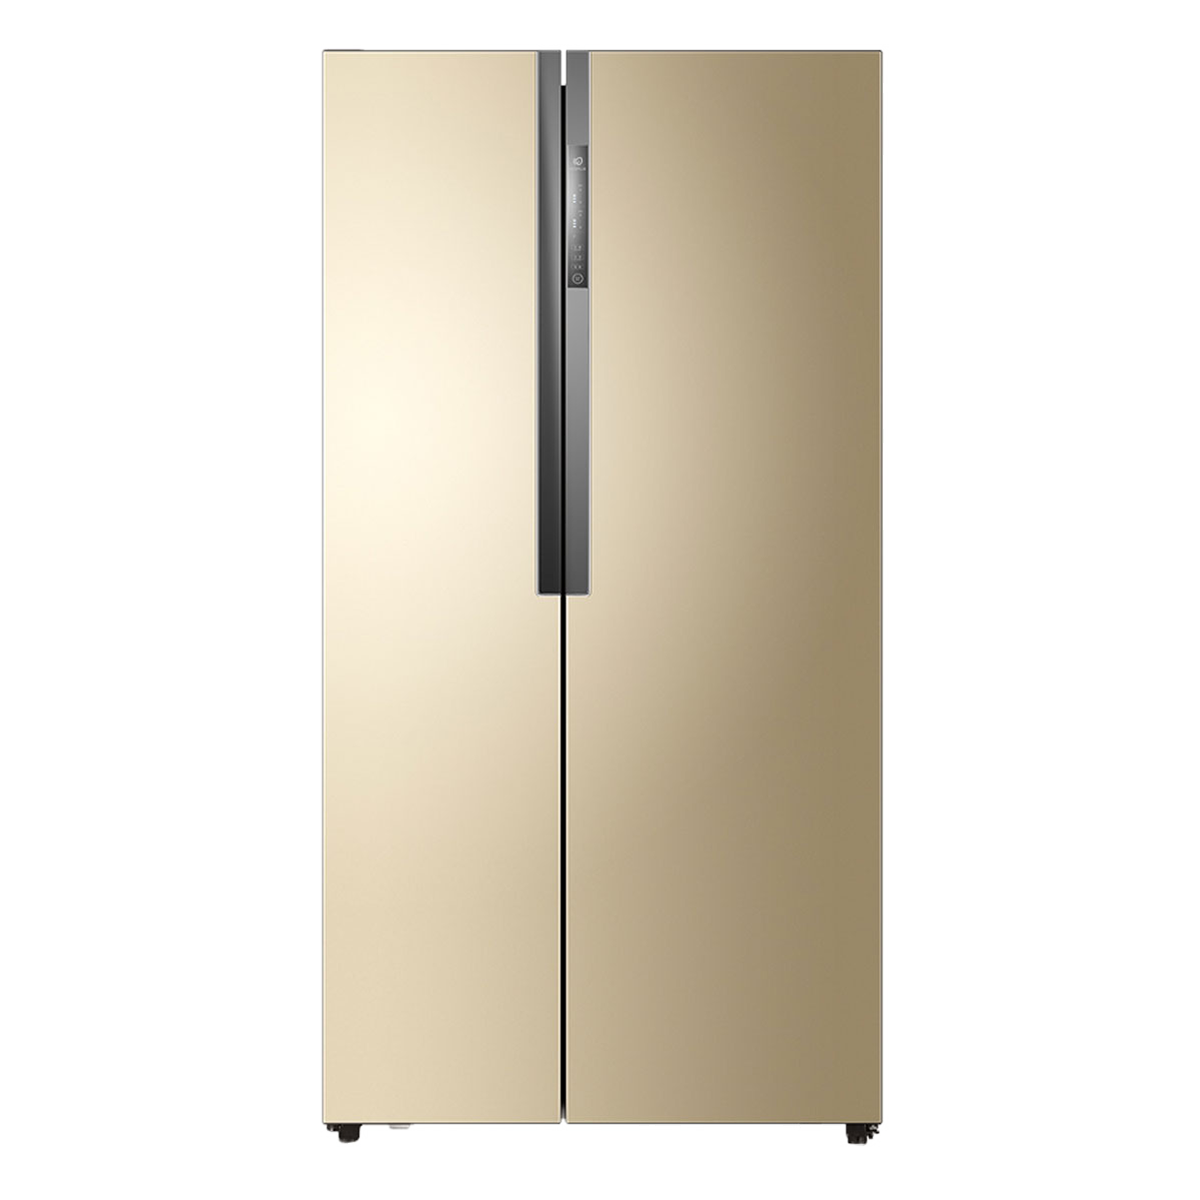 海尔Haier冰箱 BCD-532WDPT 说明书